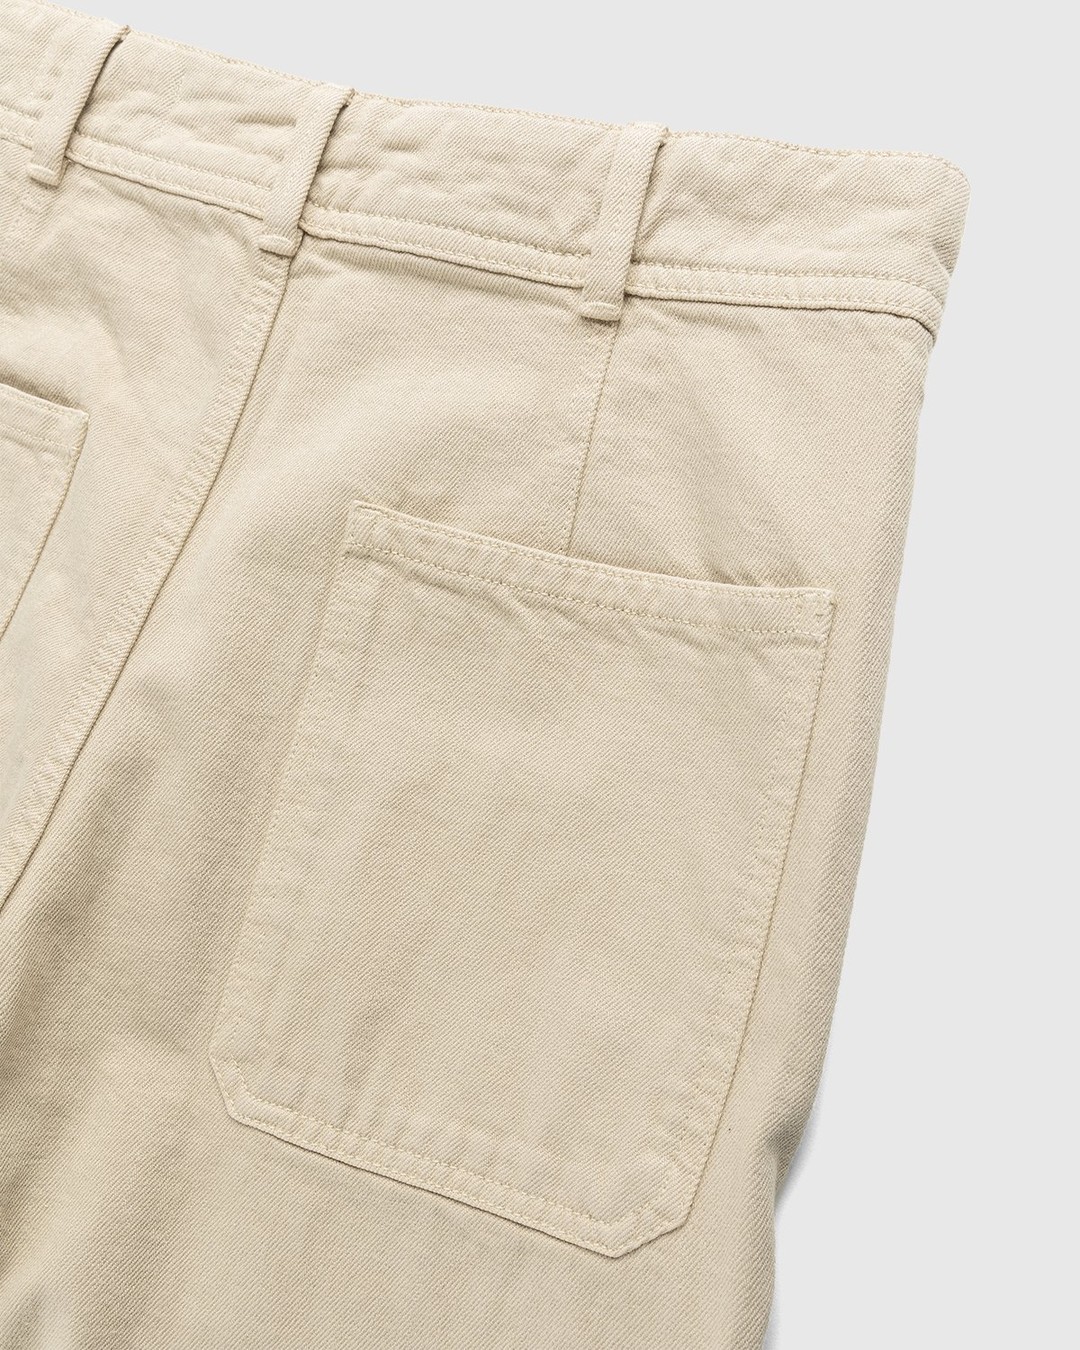 Lemaire – Italian-Woven Denim Sailor Pants Saltpeter - Pants - Beige - Image 4